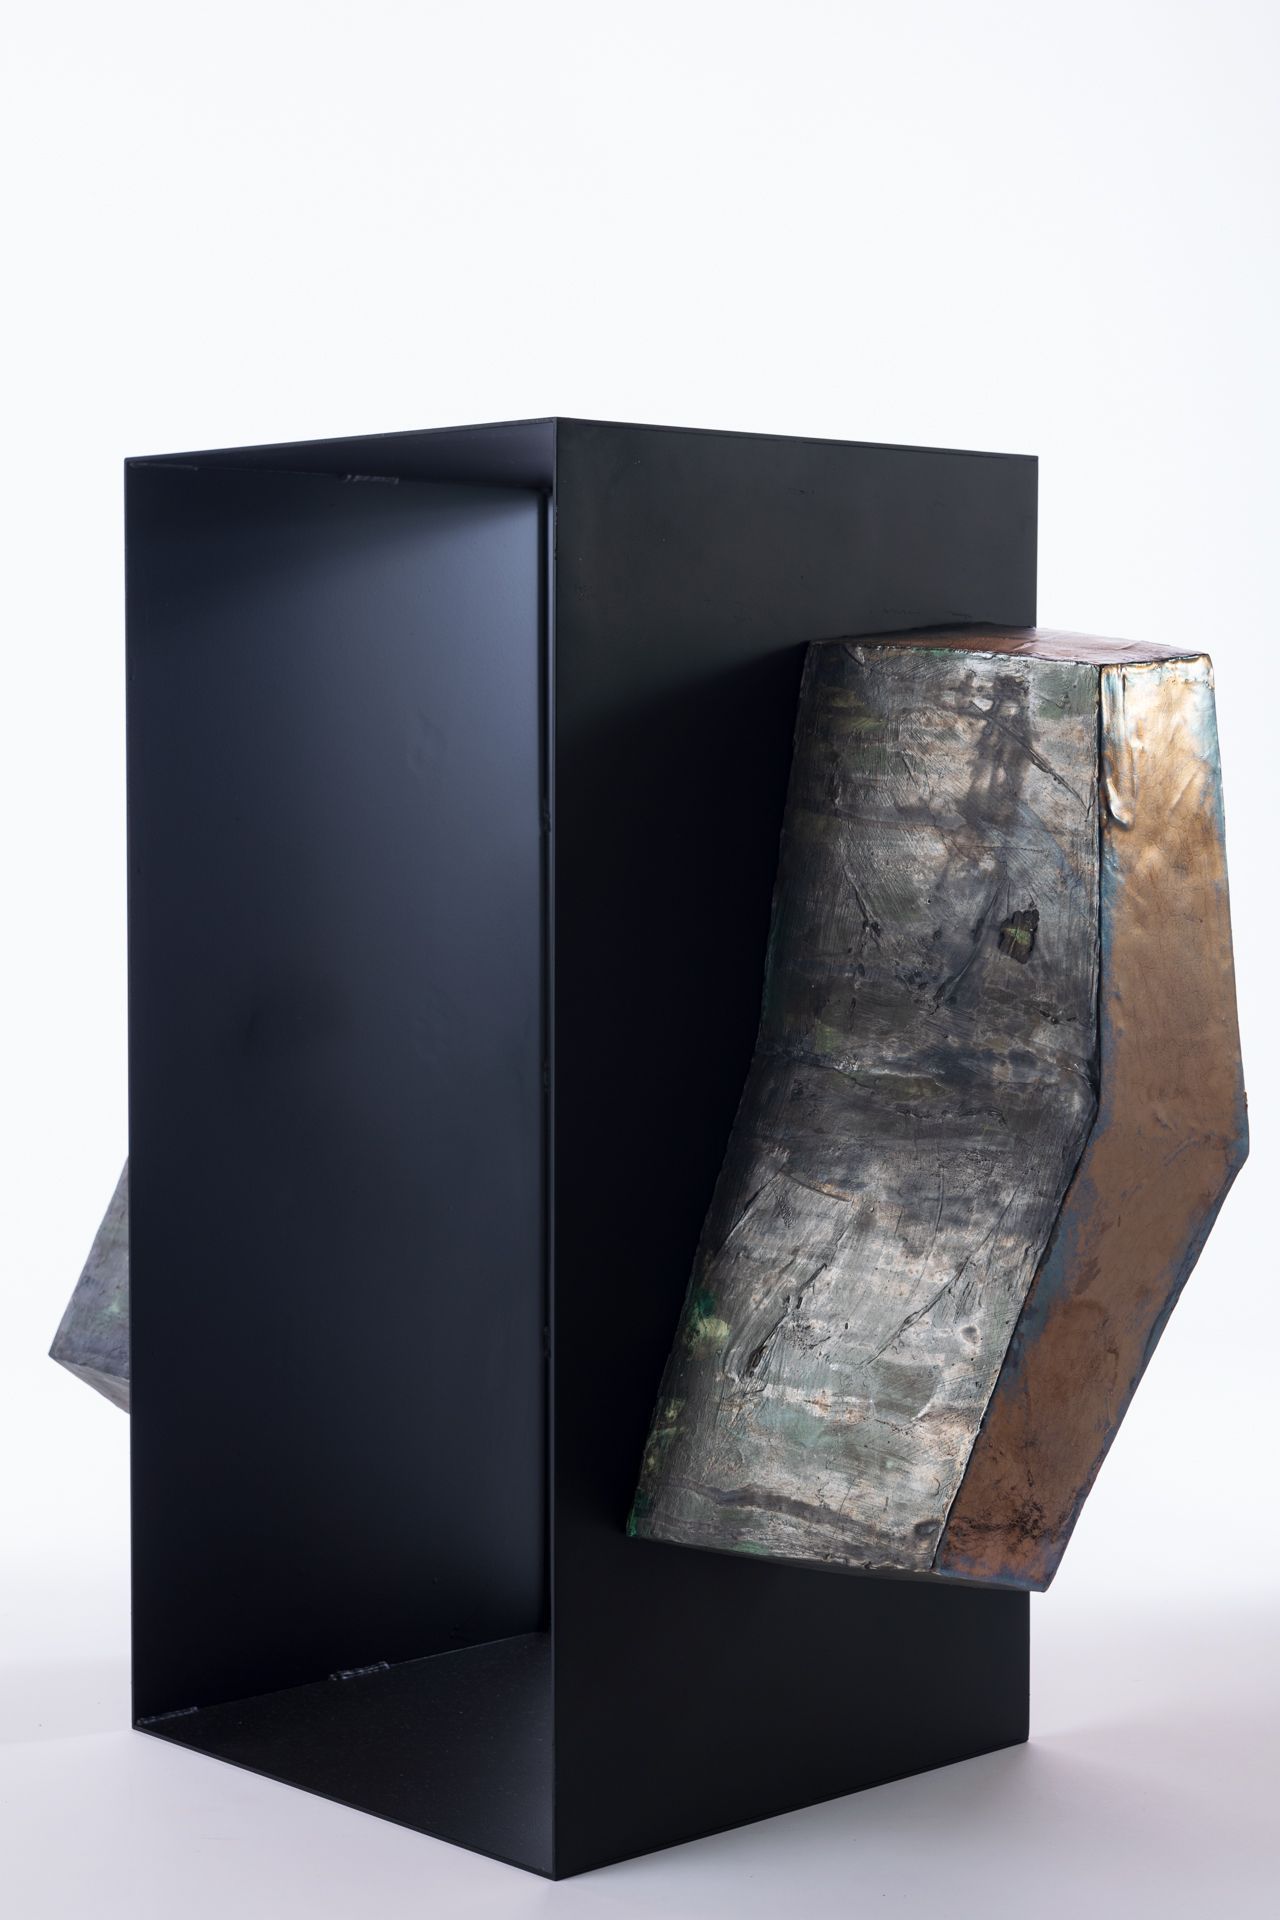 Sculpture en céramique de l'artiste japonaise Chisato Yasui. Cette œuvre comporte une partie centrale en métal noir, flanquée de deux pièces en céramique de chaque côté. La partie centrale est évidée.